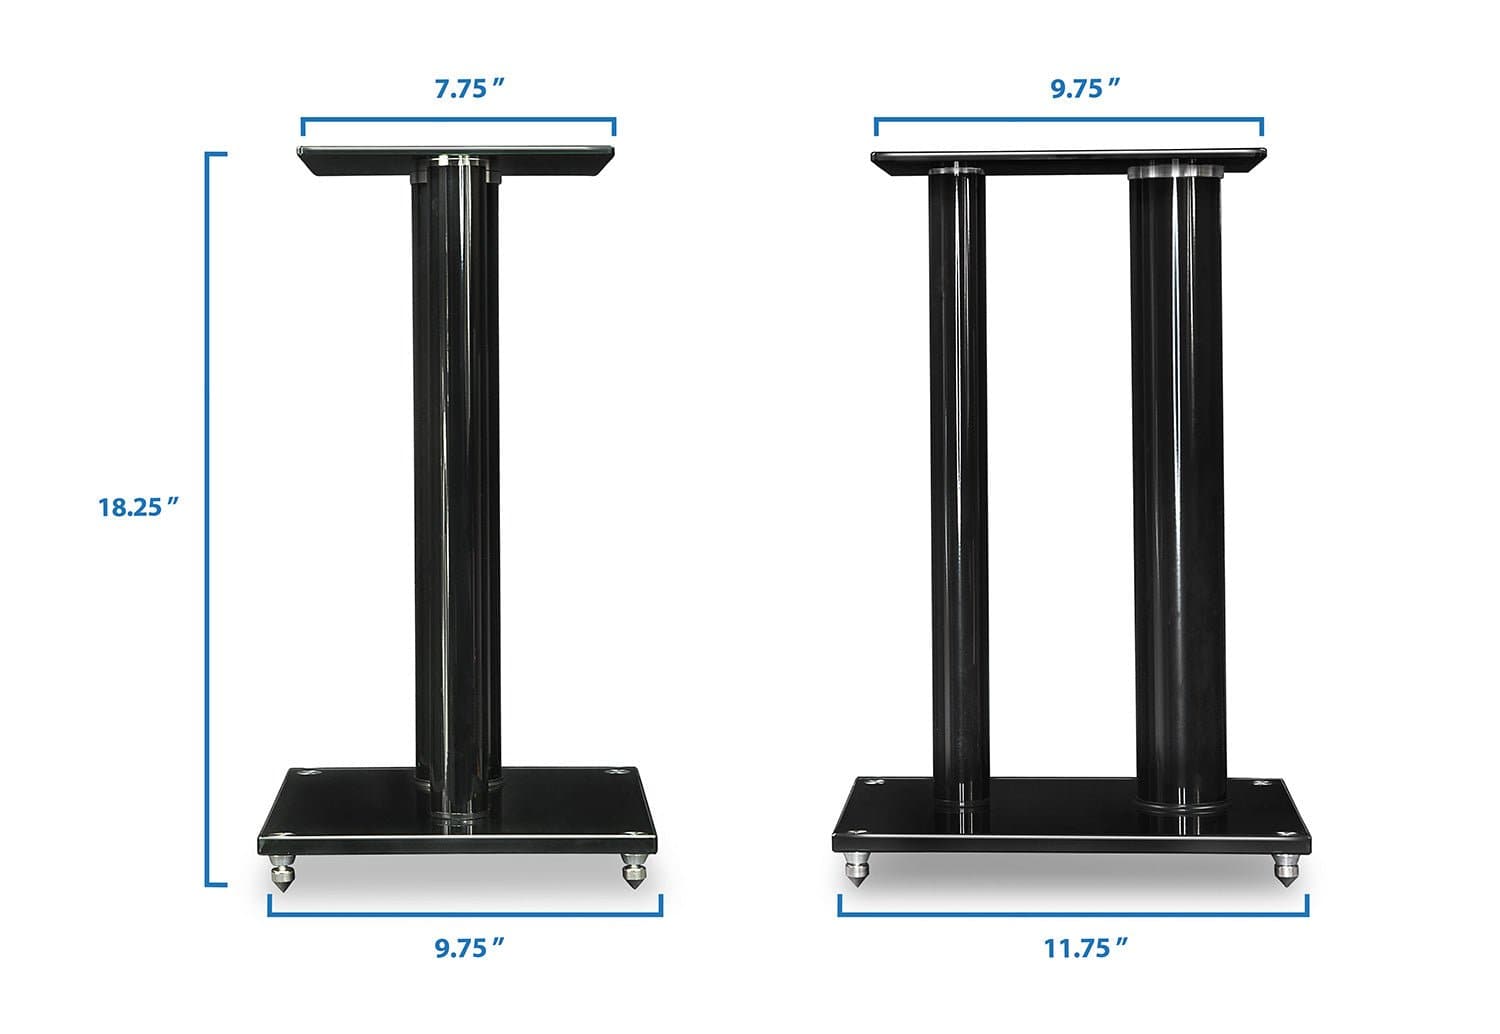 Premium Aluminum Glass Speaker Stands (pair) - Mount-It!